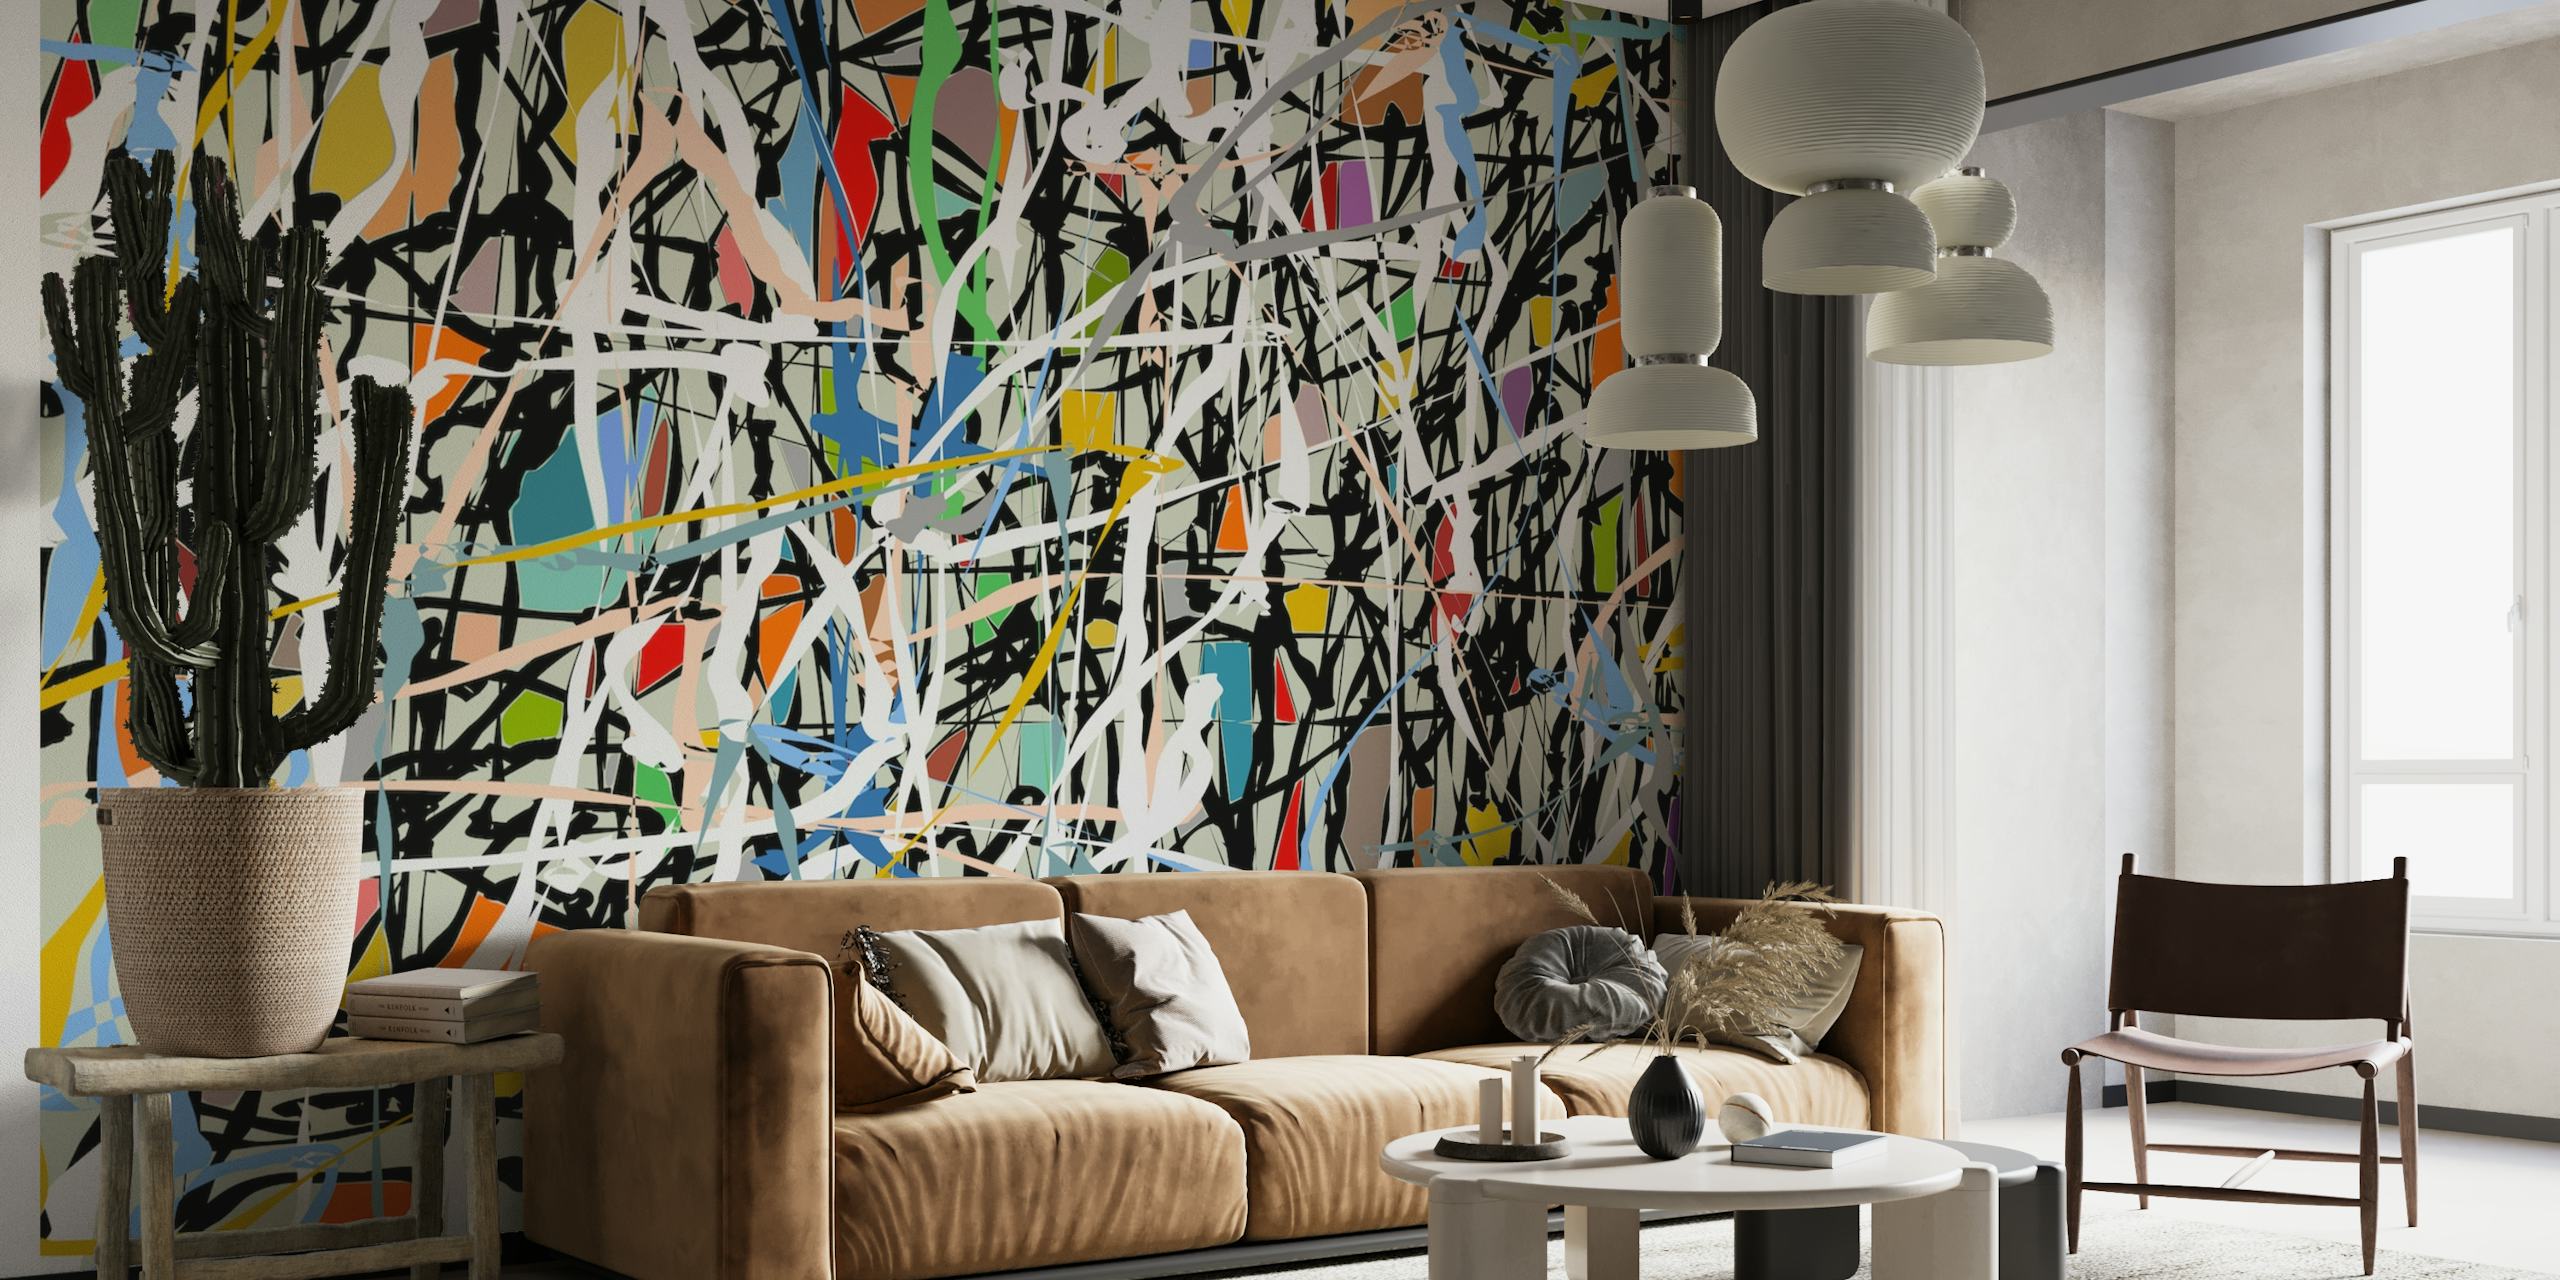 Zidna slika u stilu apstraktnog ekspresionizma sa živopisnim mrljama i odvažnim potezima sličnim Pollockovim umjetničkim djelima